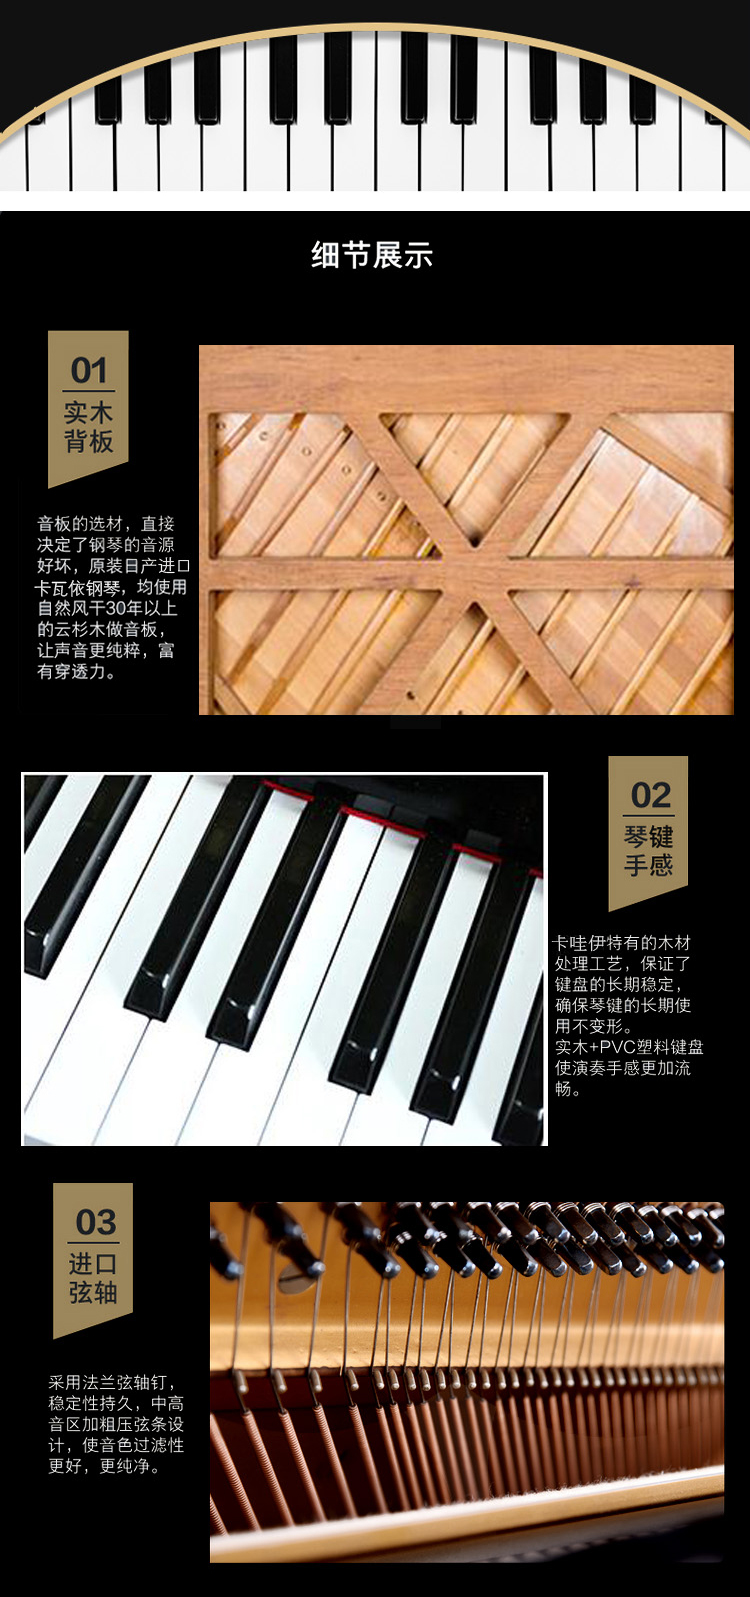 日本原装进口卡哇伊钢琴 KAWAI KU-2D(图2)